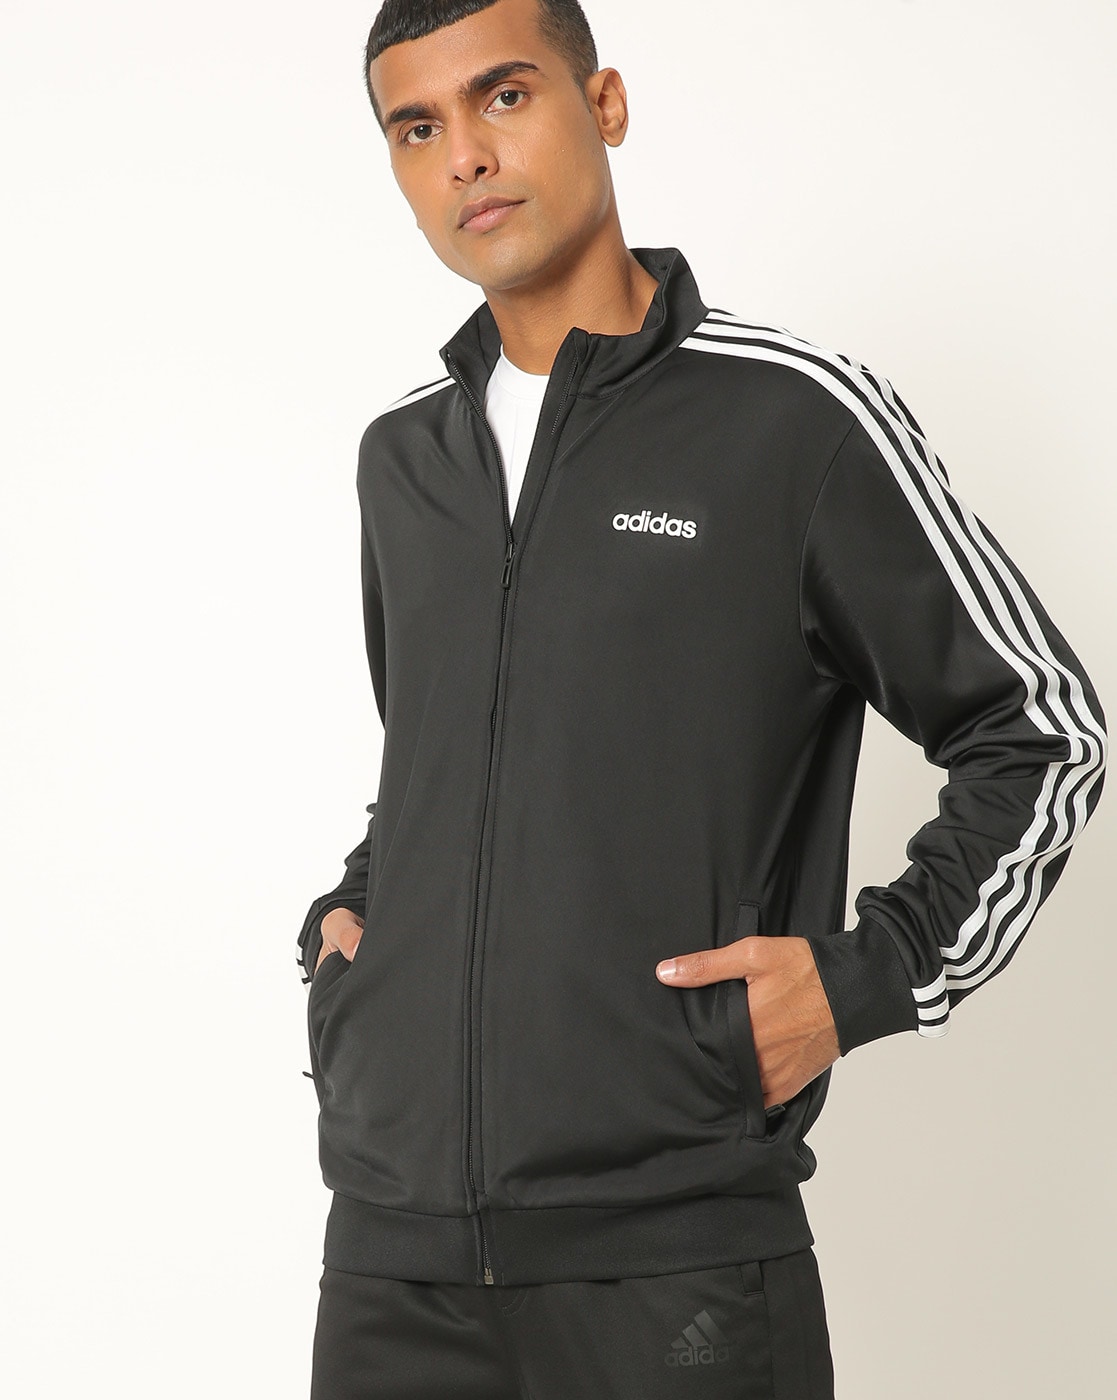 adidas track jacket india